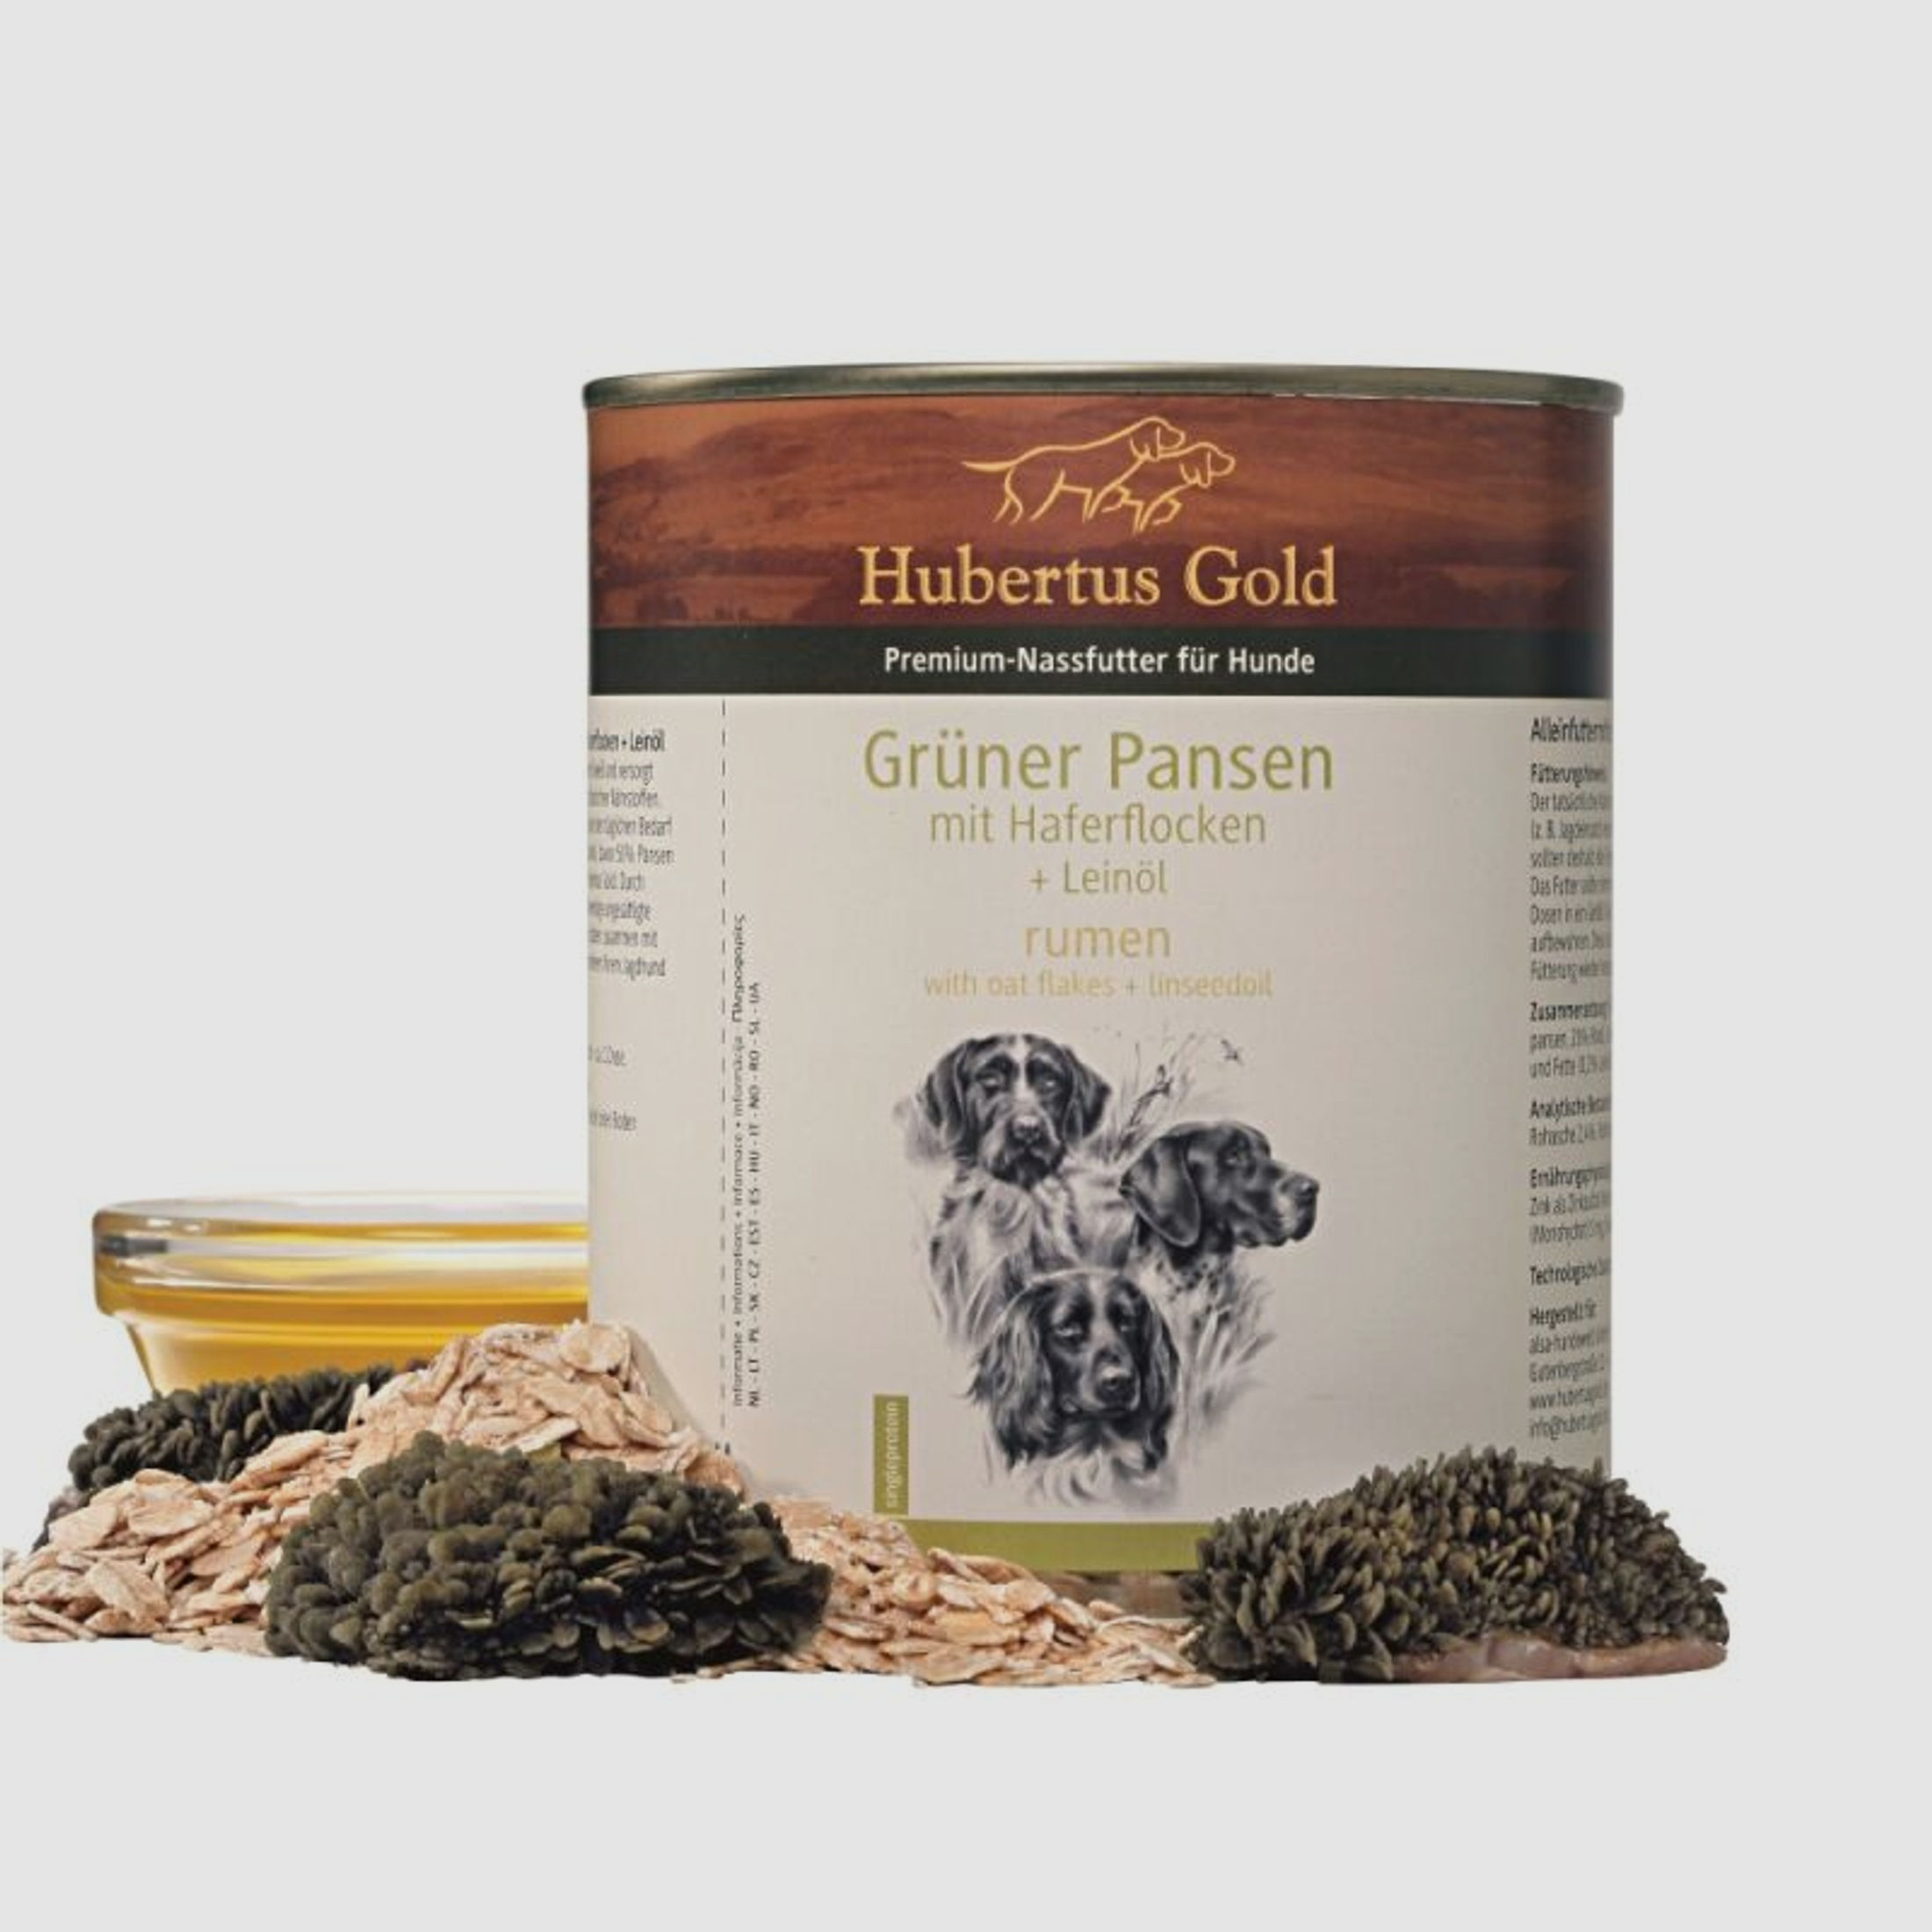 Hubertus Gold Premium-Nassfutter Grüner Pansen mit Haferflocken + Leinöl 800g